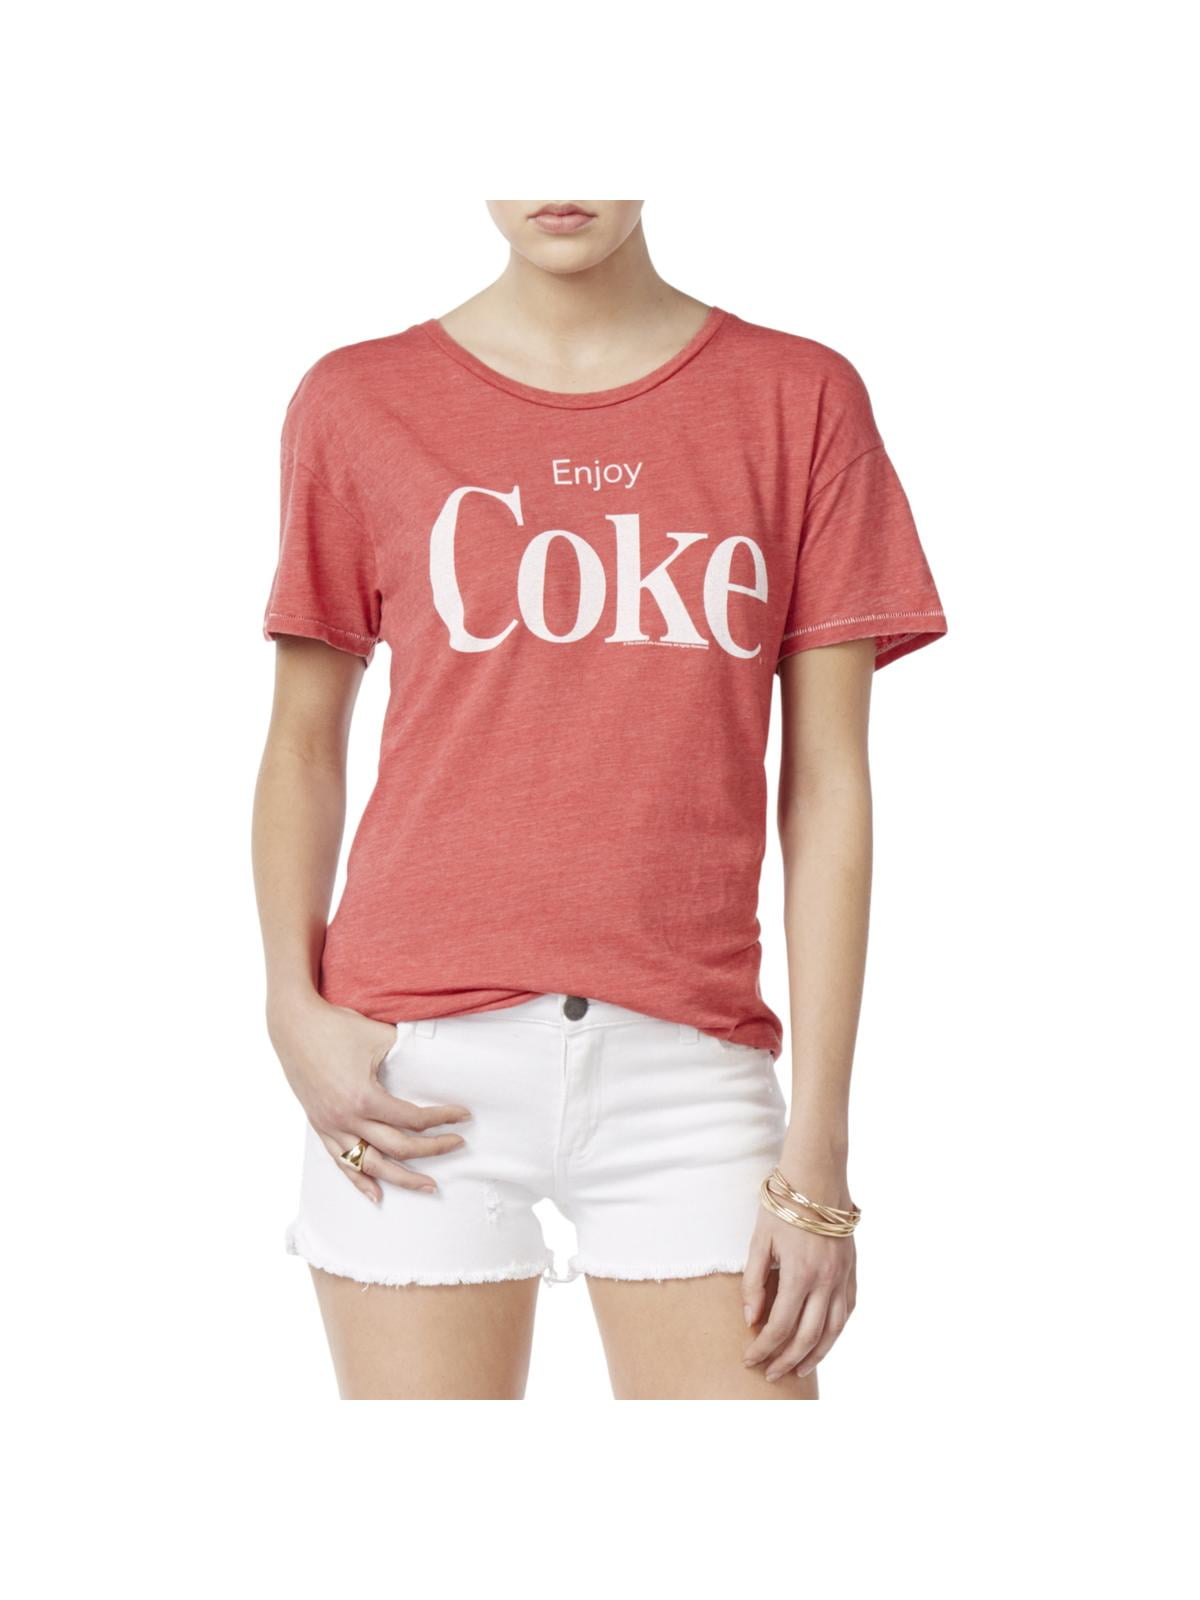 coca cola t shirt womens